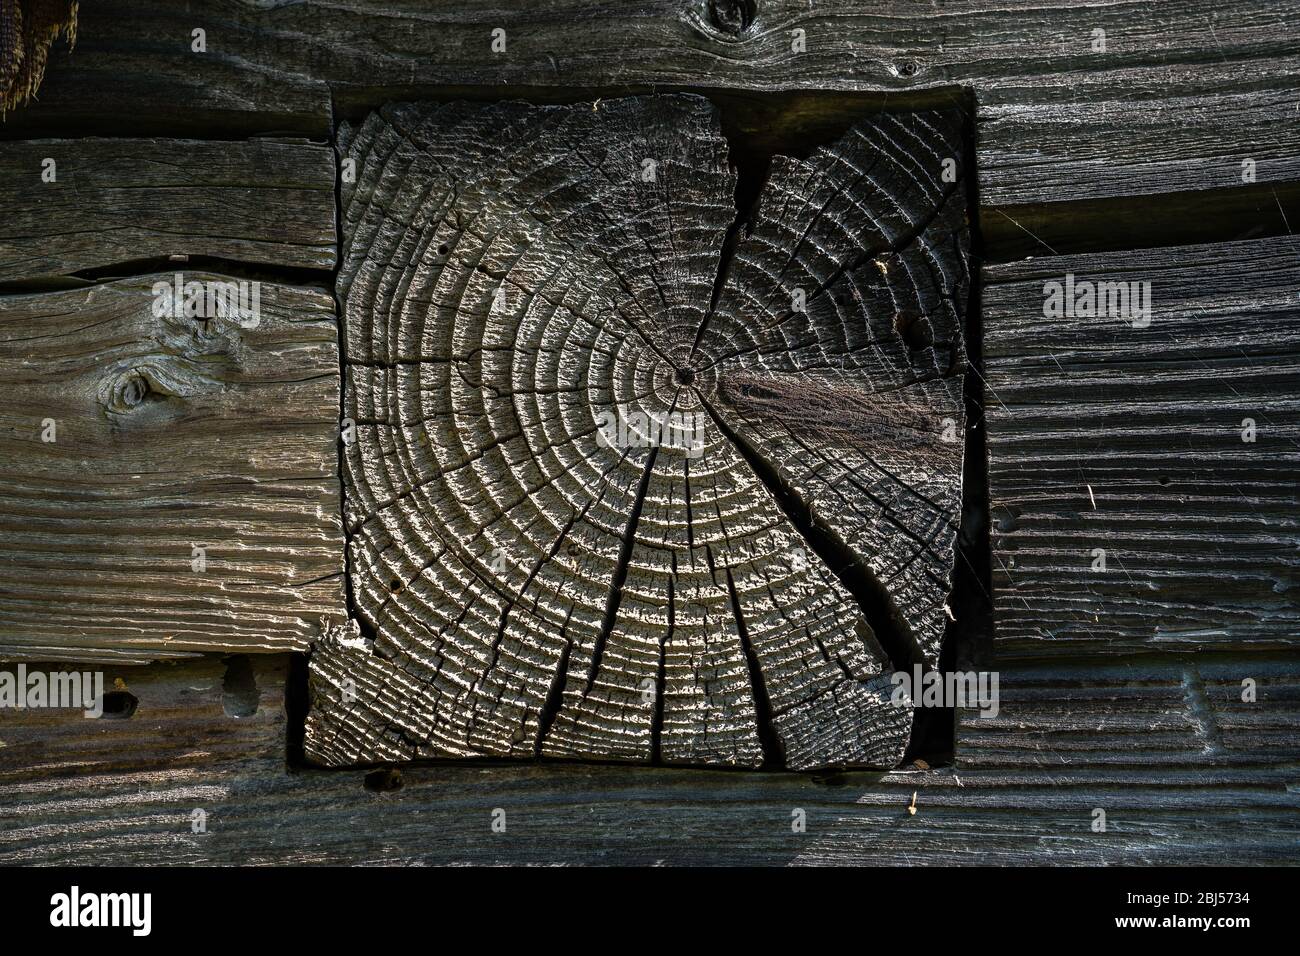 Un fragment du mur d'un ancien bâtiment en bois du village avec la fin d'un bois de houle. La surface endommagée par les précipitations et l'air, rugueuse Banque D'Images